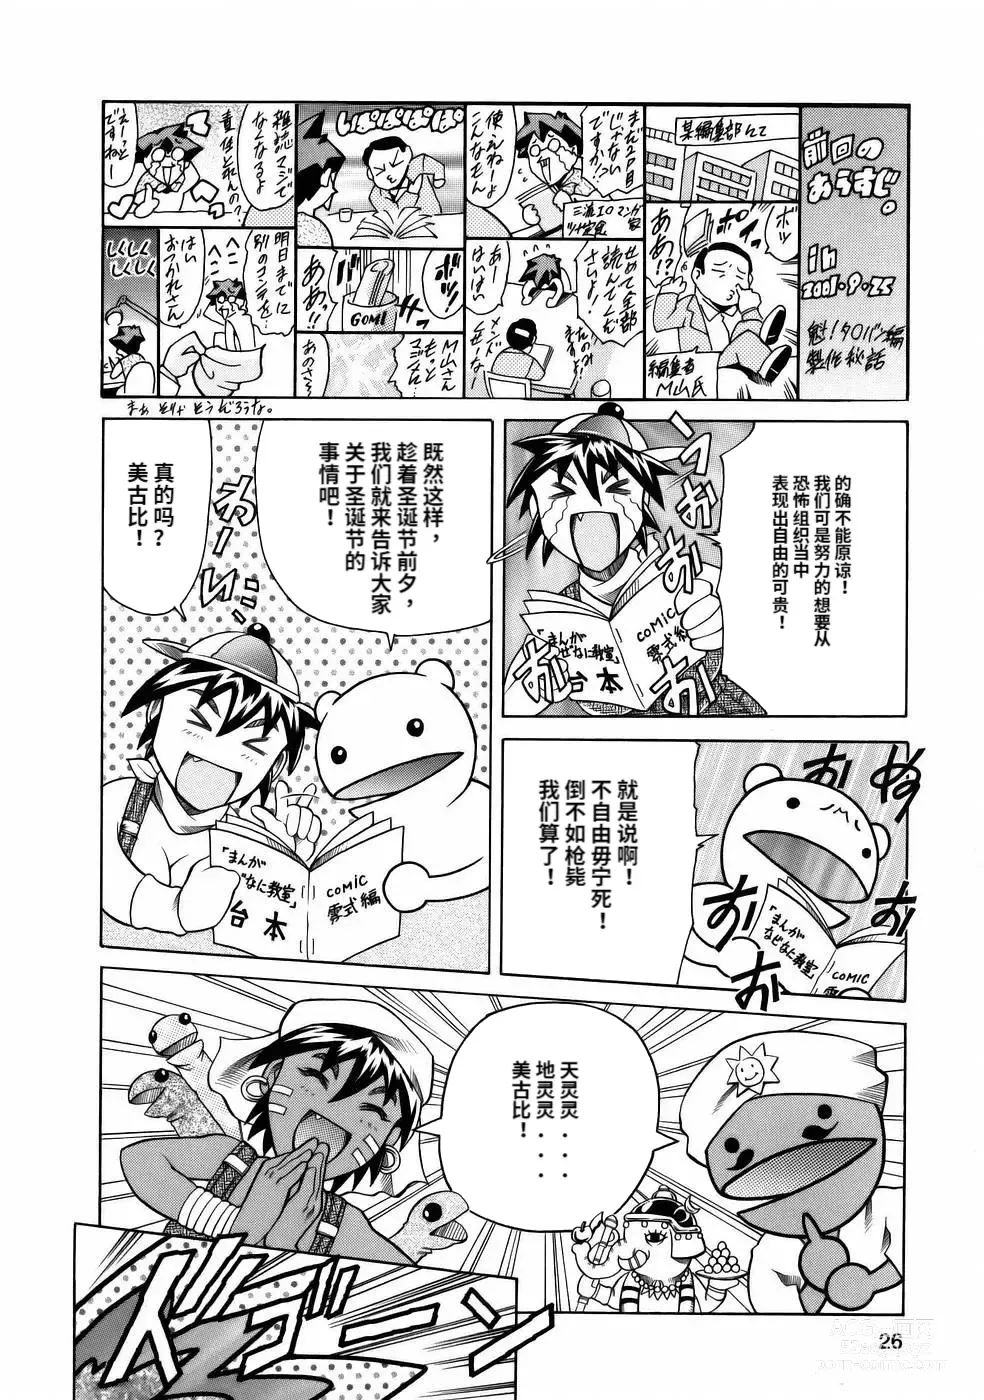 Page 28 of manga Manga Naze Nani Kyoushitsu